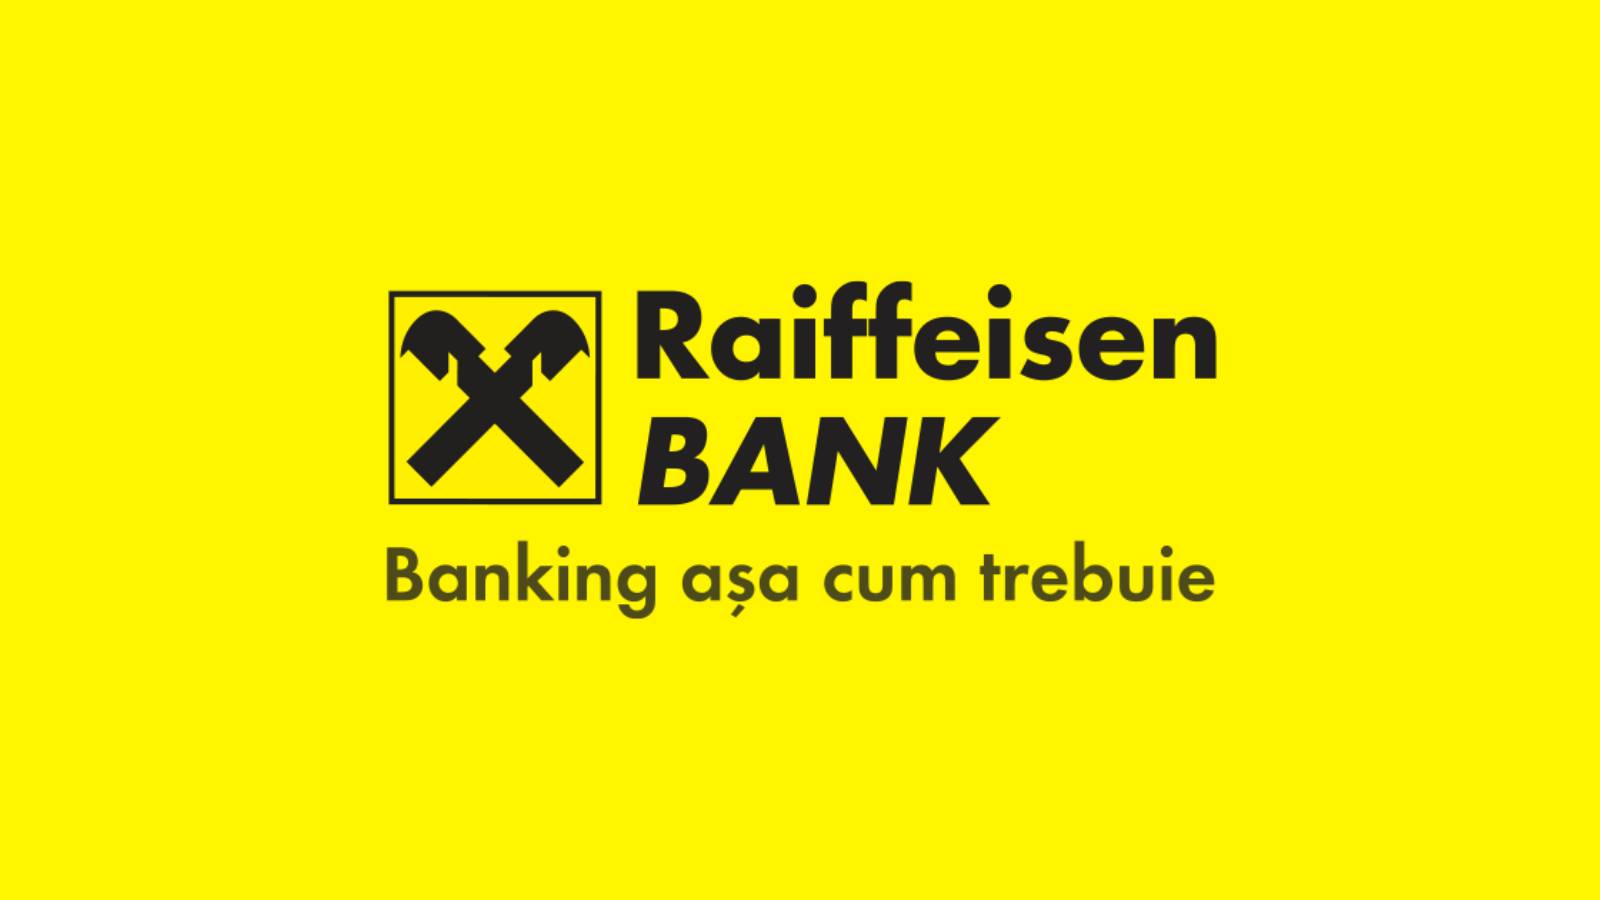 Raiffeisen Banks officielt annoncerede beslutning påvirker kunderne